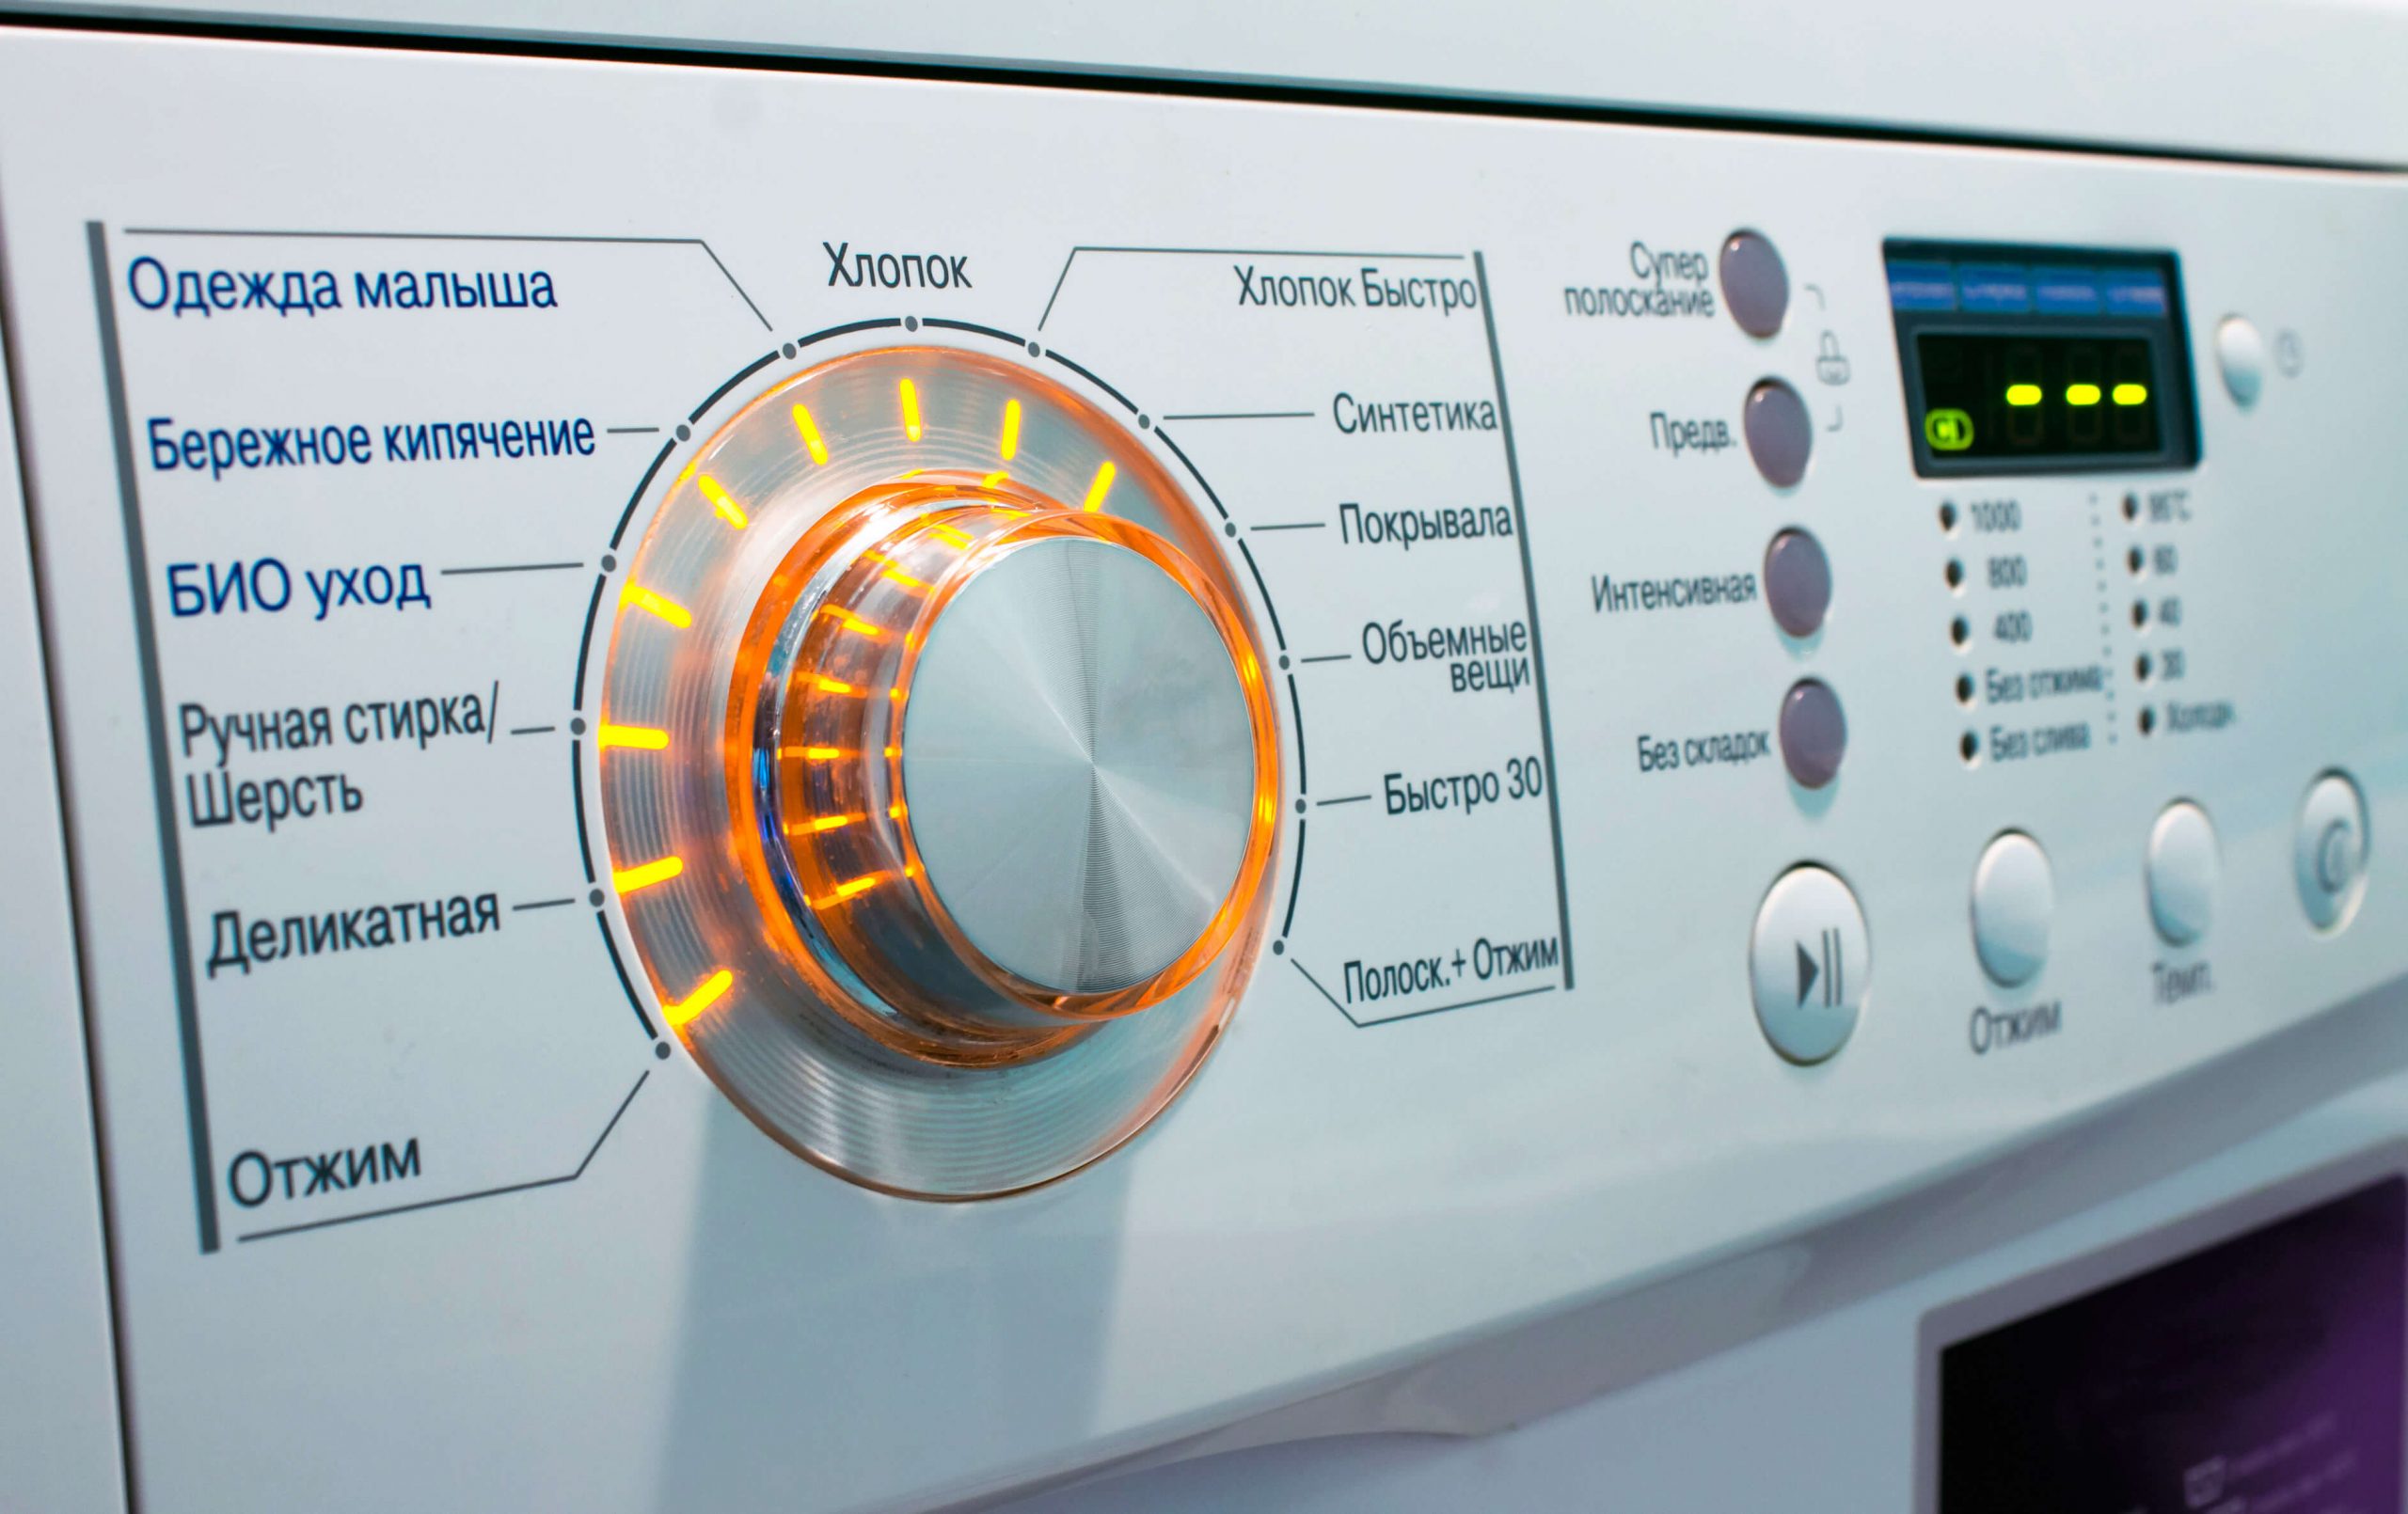 Fejl OE, DE andre på LG vaskemaskine: hvad disse